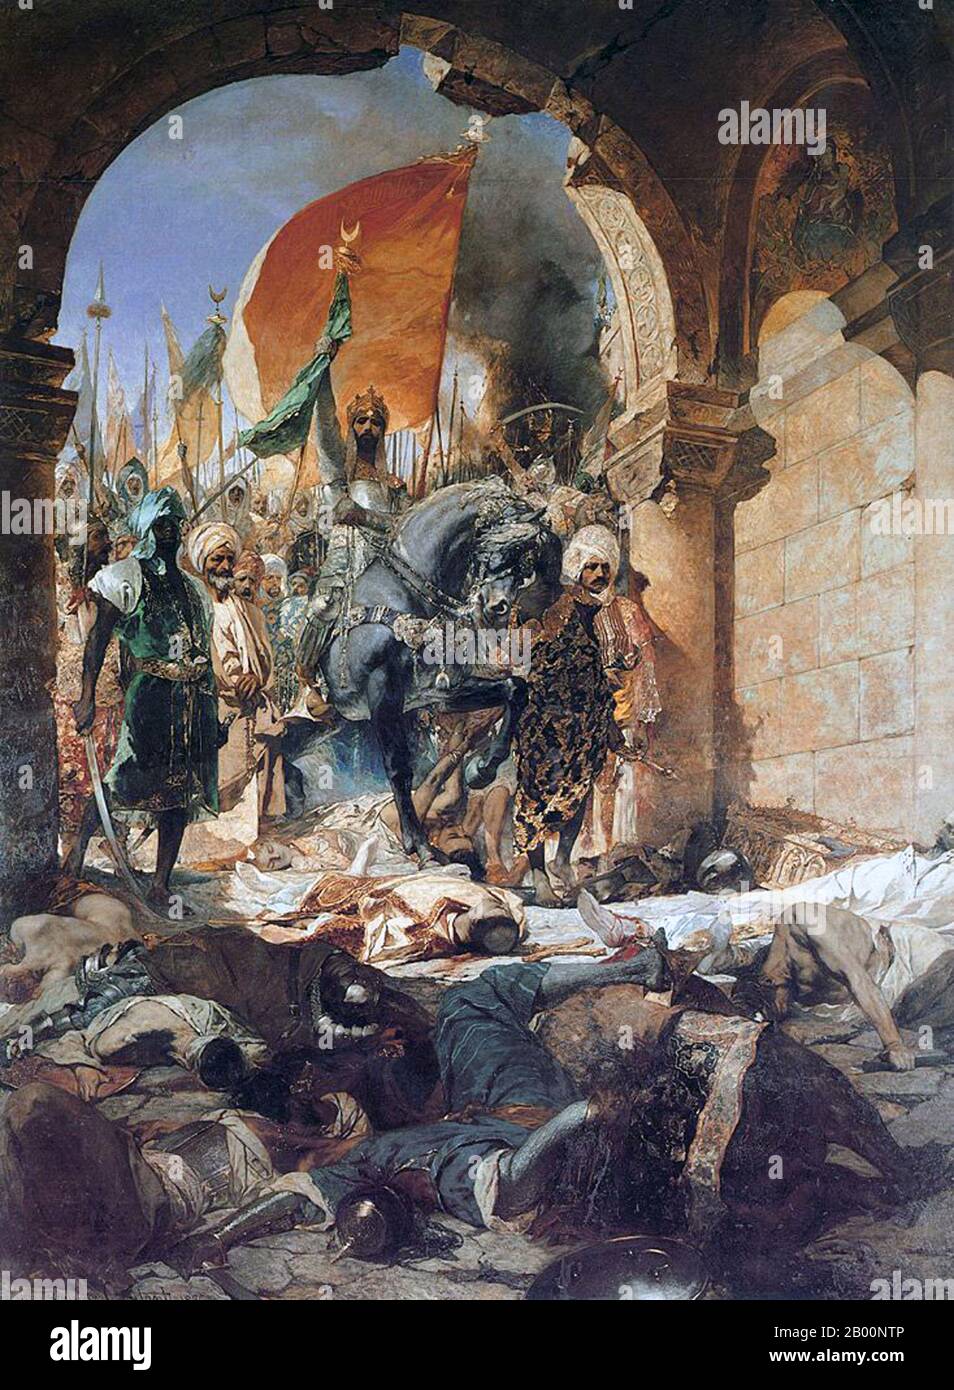 Turquie/France: 'Entrée du sultan Mehmed II à Constantinople'. Peinture à l'huile sur toile par Jean-Joseph Benjamin-constant (1845-1902), 1876. Mehmed II (30 mars 1432 – 3 mai 1481) ou, en turc moderne, Fatih Sultan Mehmet; connu sous le nom de Mahomet ou Mohammed II dans le début de l'Europe moderne) a été Sultan de l'Empire ottoman de 1444 à septembre 1446, et plus tard de février 1451 à 1481. En 1453, à l'âge de seulement 21 ans, Mehmed dirigea une armée ottomane dans le siège de Constantinople avec entre 80,000 et 200,000 soldats et une marine de 320 navires, conquérant la ville après un siège de 57 jours. Banque D'Images